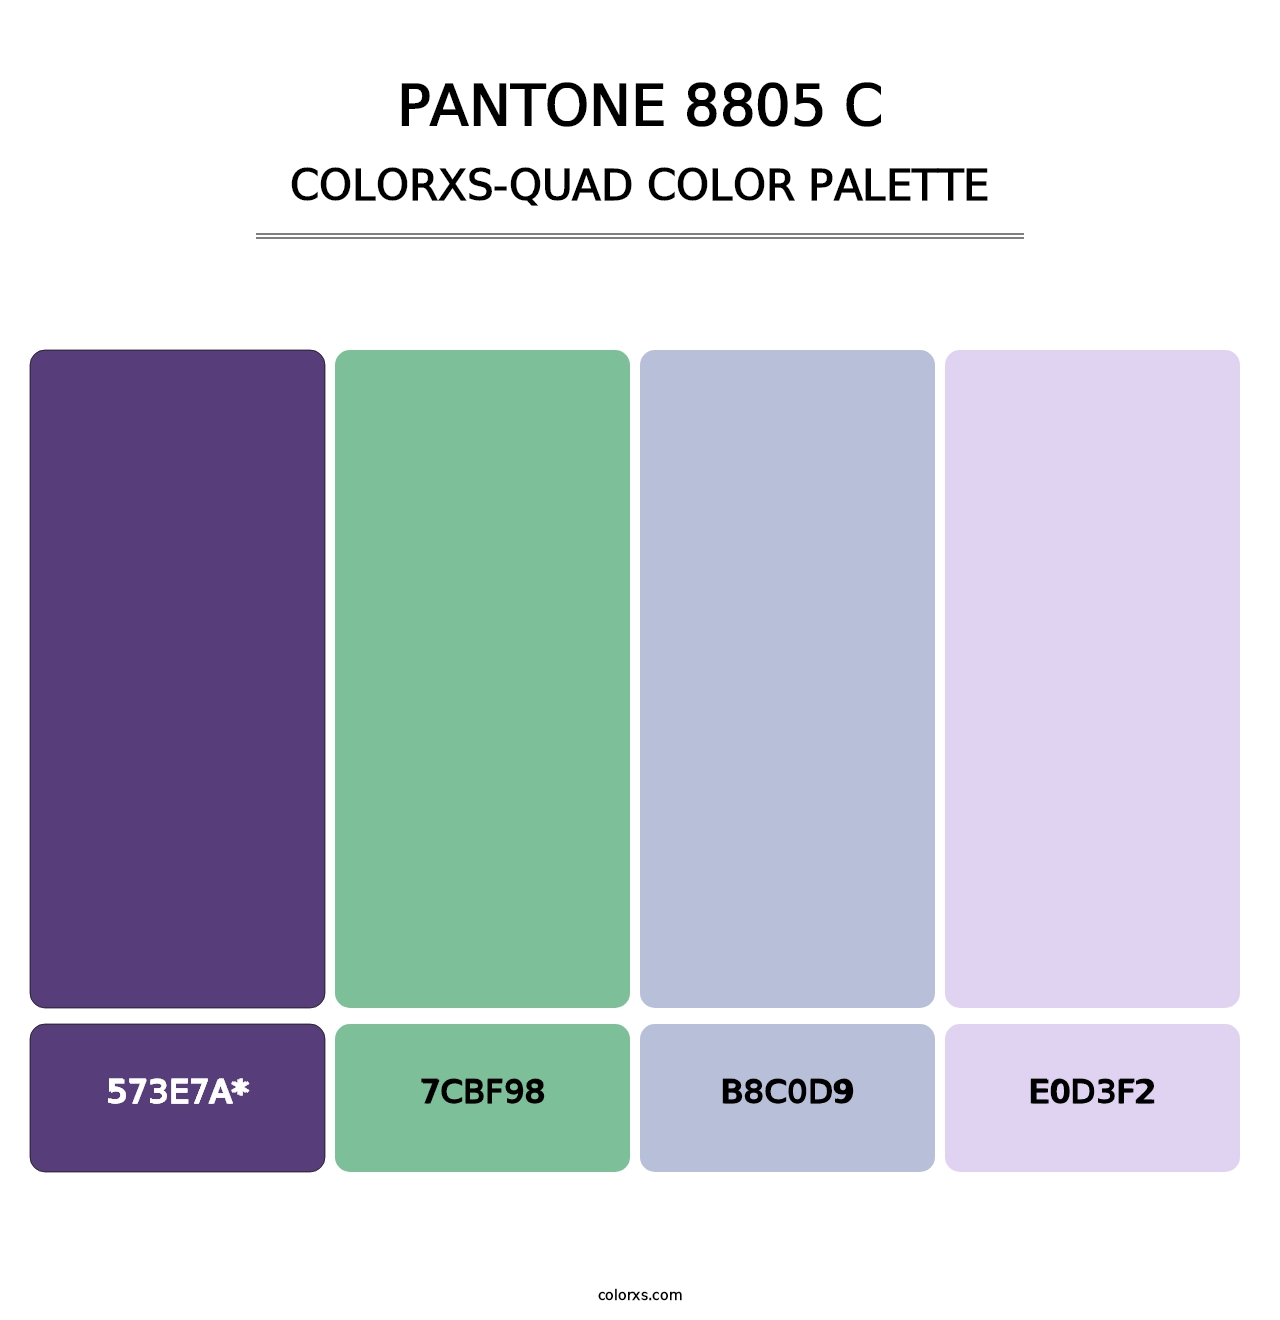 PANTONE 8805 C - Colorxs Quad Palette